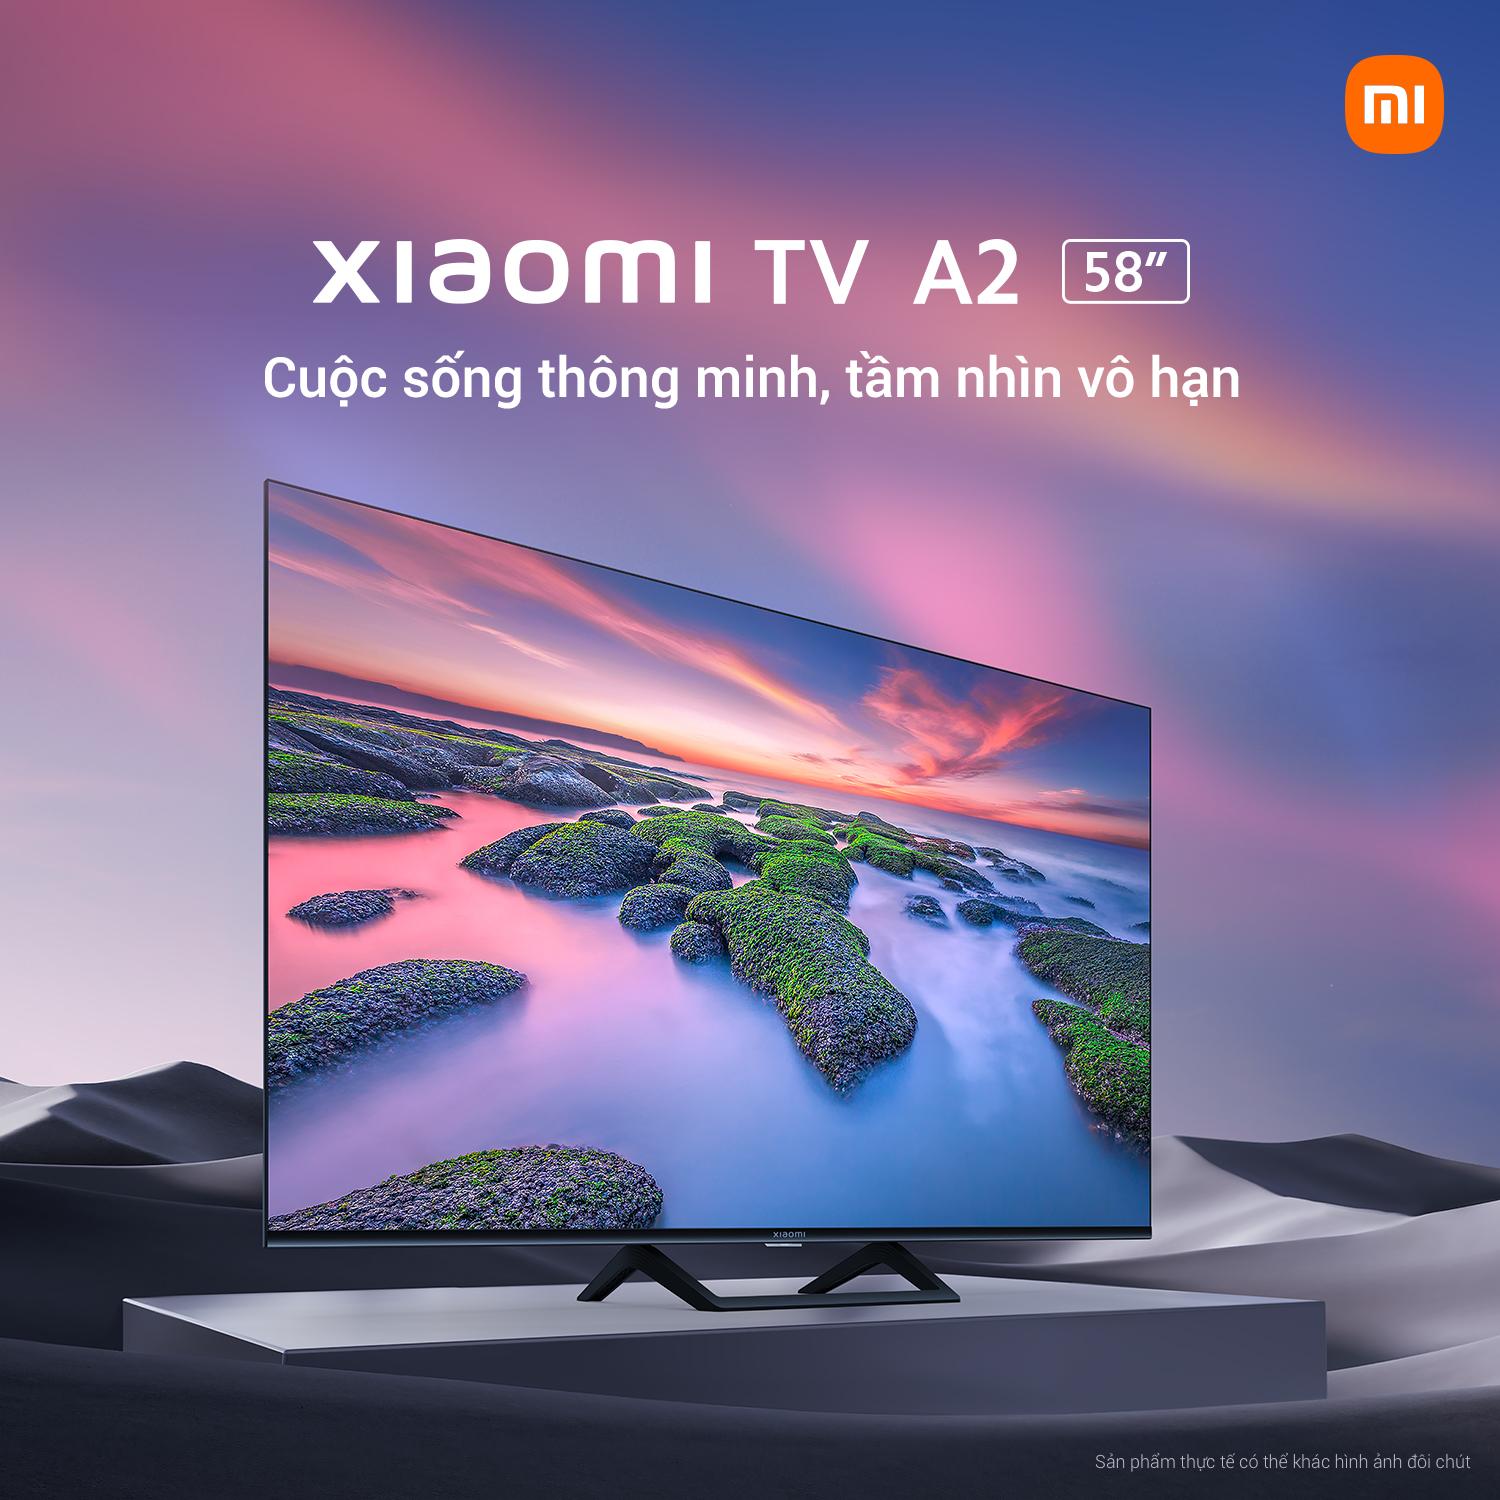 Xiaomi ra mắt Xiaomi TV A2 58 inch với giá bán chính thức 13,990,000 VND